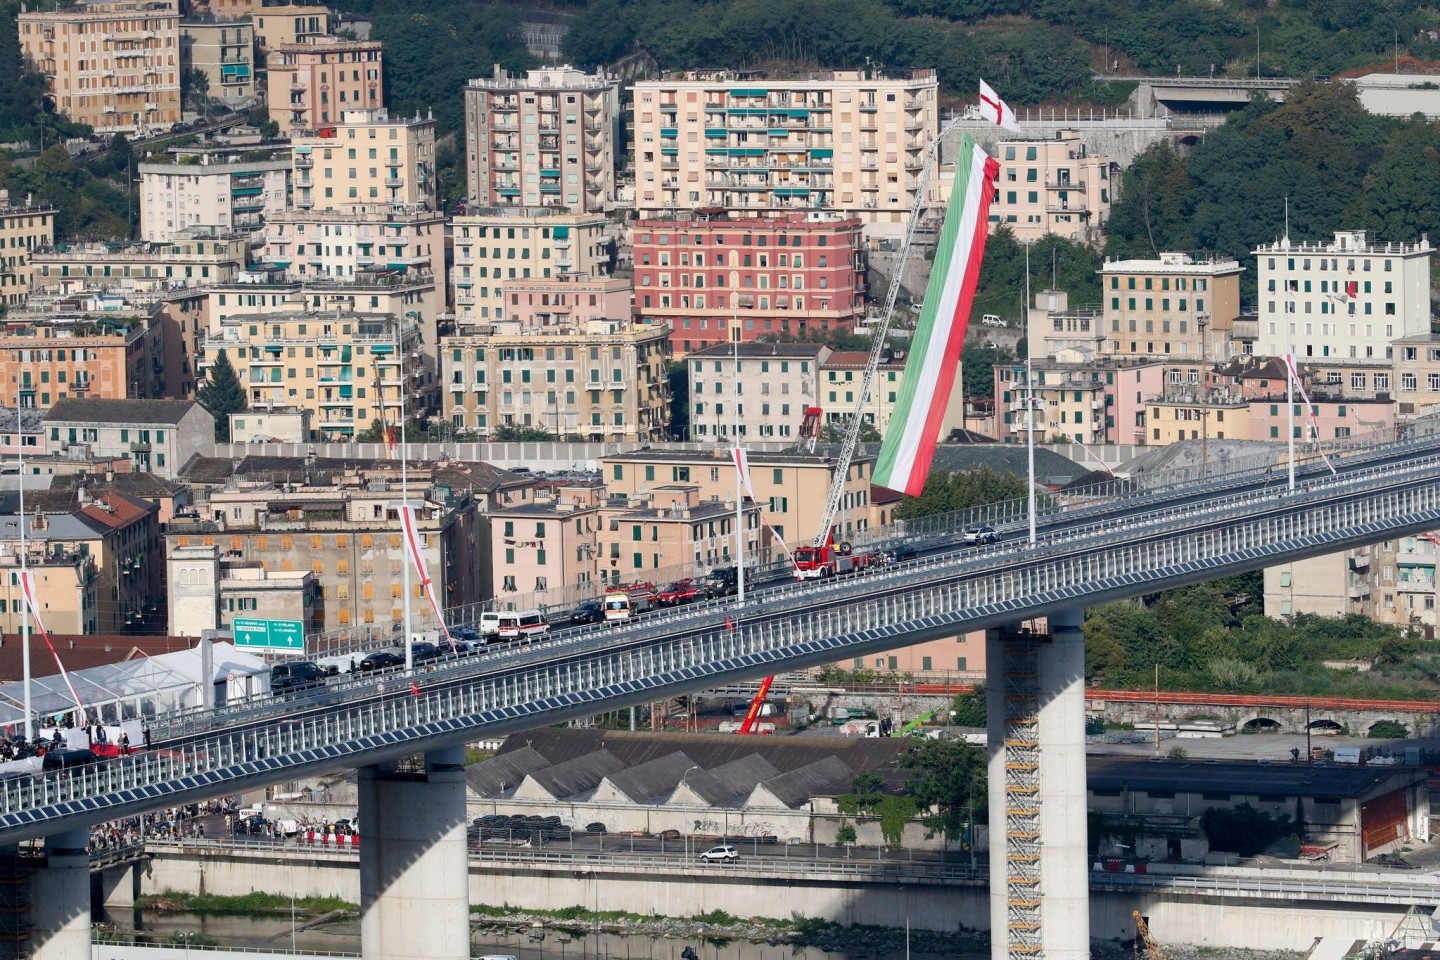 Knapp zwei Jahre nach dem Einsturz der Morandi-Autobahnbrücke konnte im Jahr 2000 der Neubau eingeweiht werden.